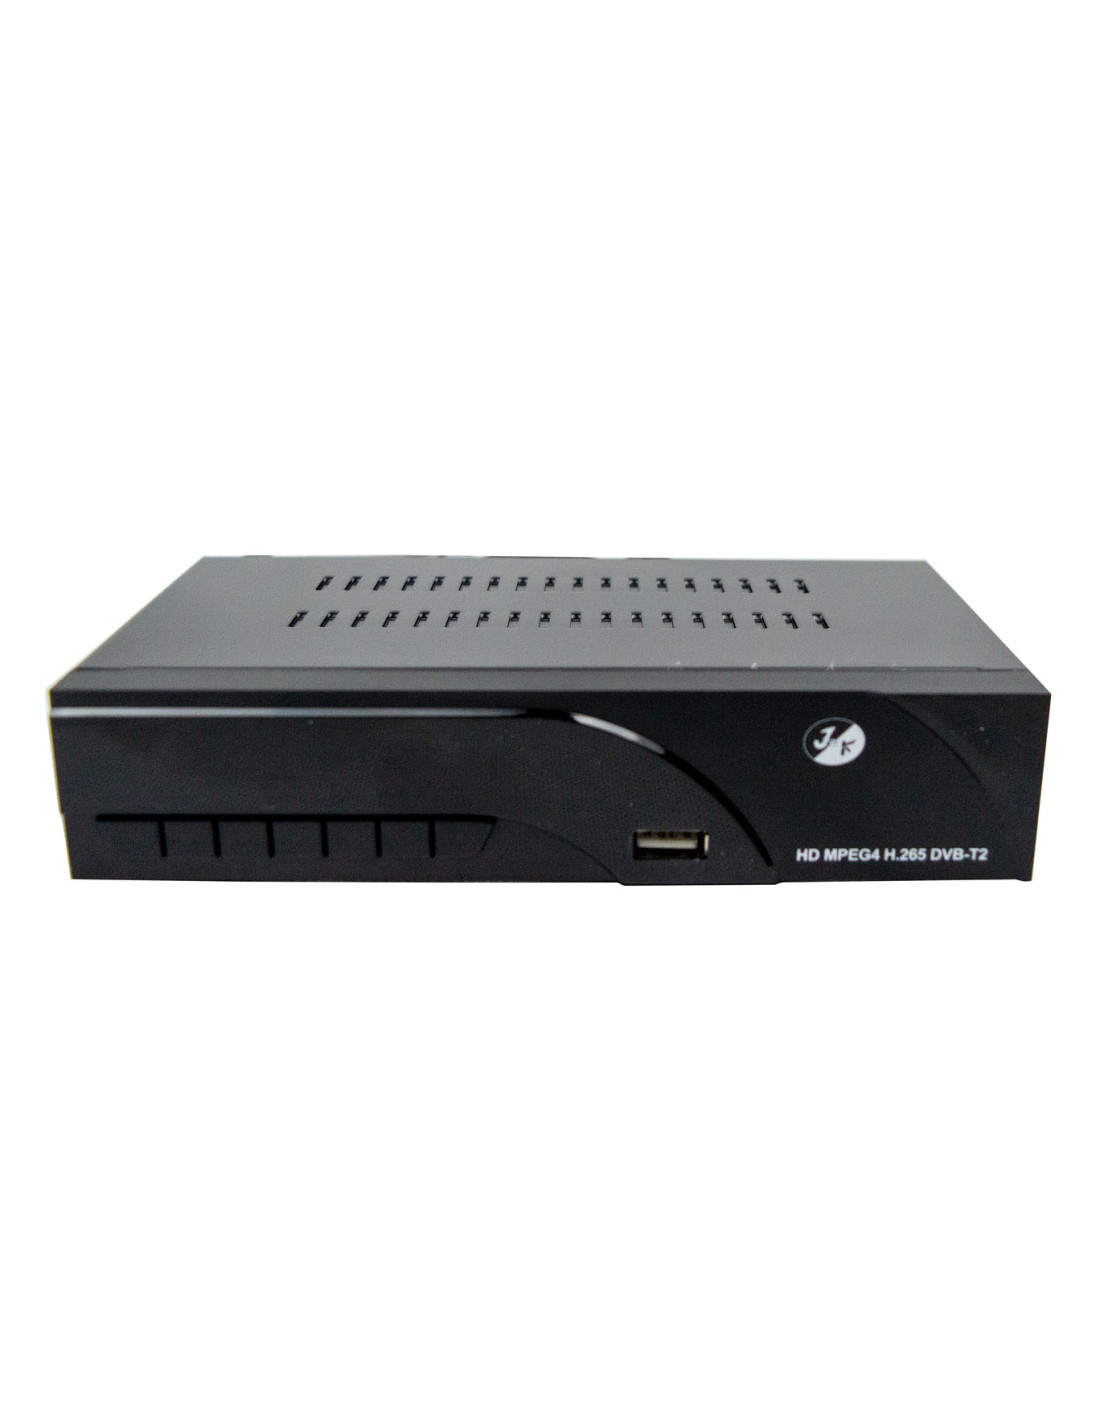 DECODIFICADOR DVB T2 FULL HD HD8943 SISTEMA PVR SCART Y HDMI SALIDA MPEG-4  USB